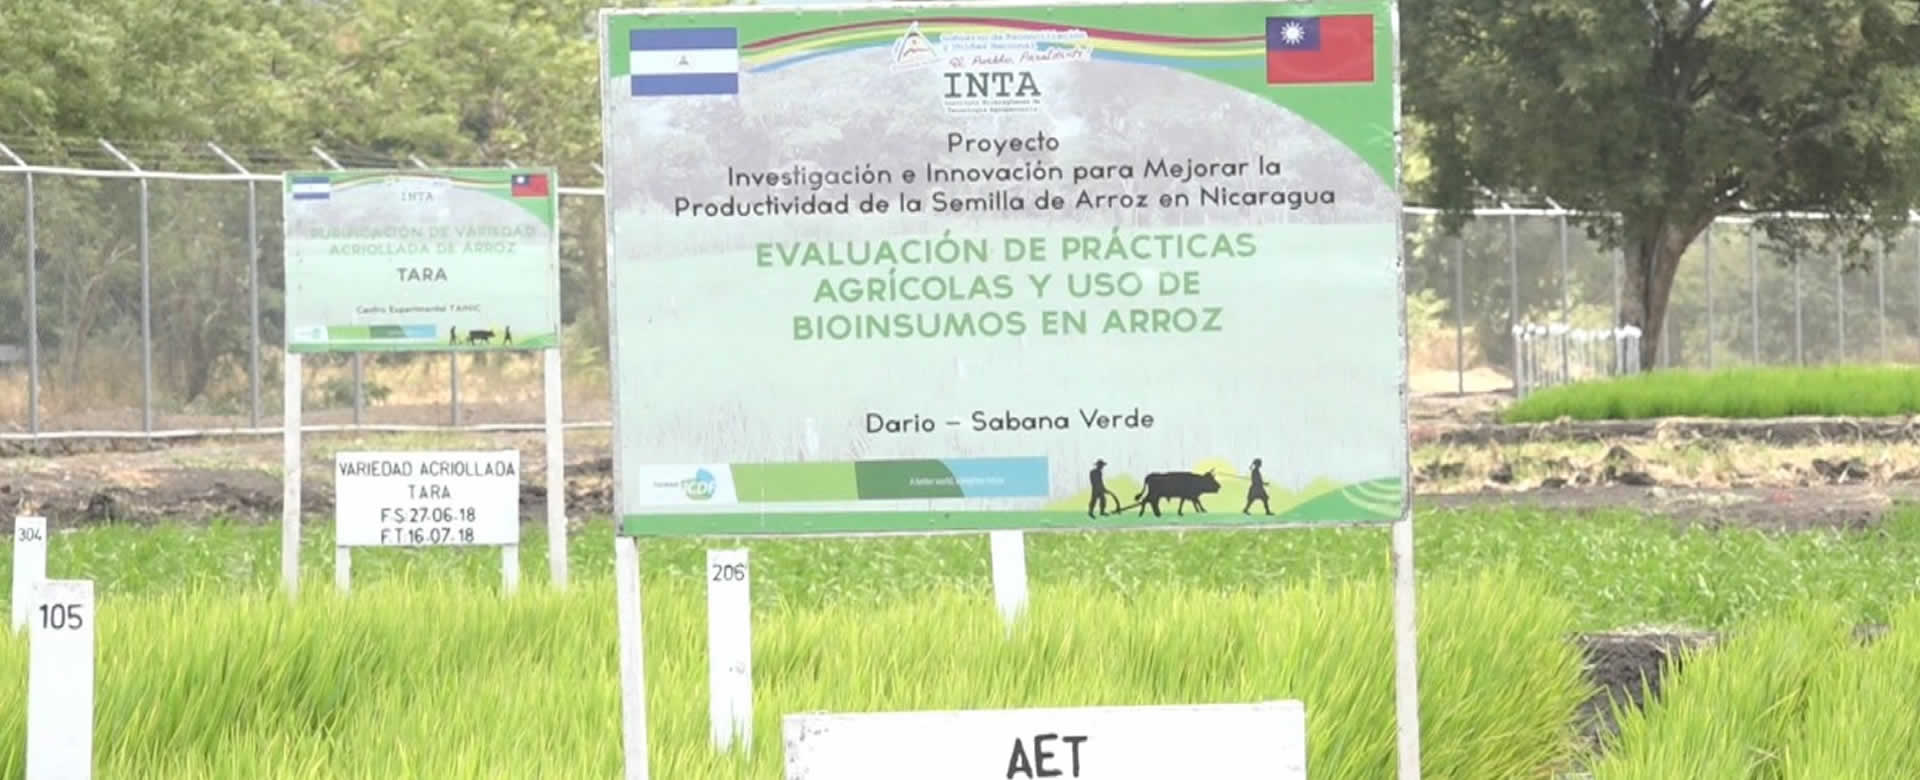 INTA con apoyo de Misión Técnica de Taiwán lanza semilla de arroz IR5M